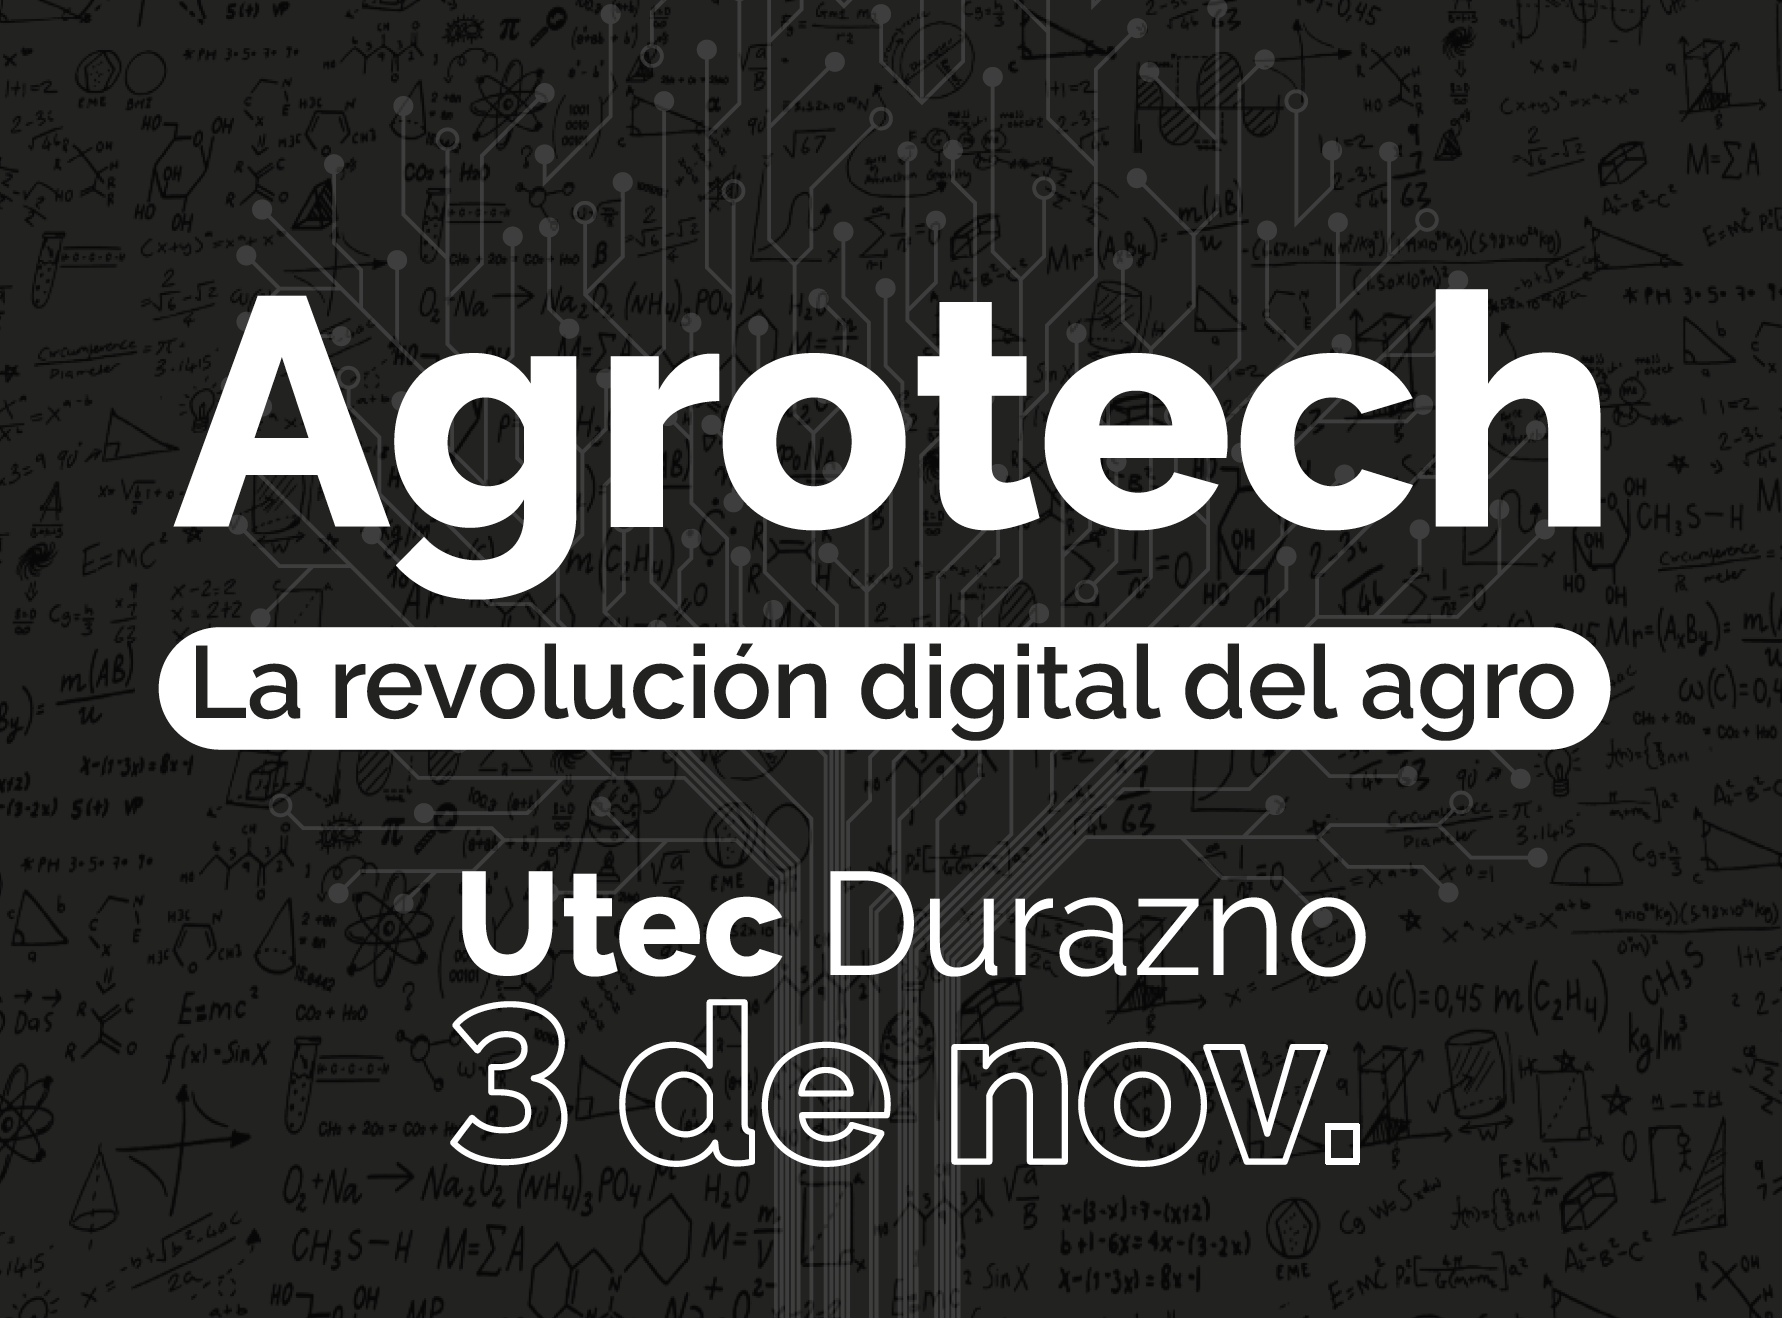 Agrotech - La revolución digital del agro.